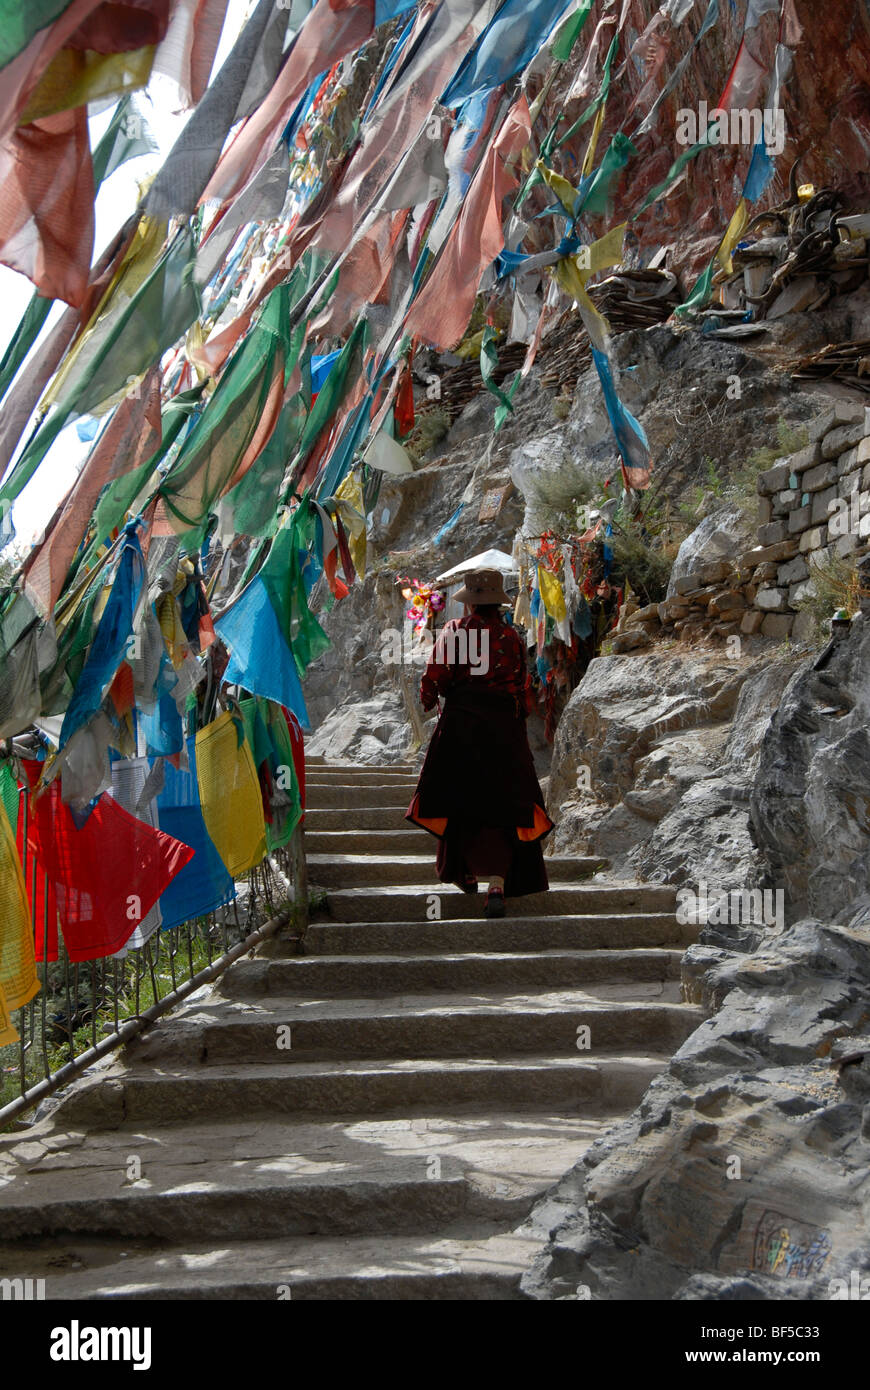 Le bouddhisme tibétain, le tibétain l'exécution d'un pèlerinage à pied le long de la Kora escaliers sous drapeaux colorés, Lhassa, Tibet, Himalaya Autonom Banque D'Images